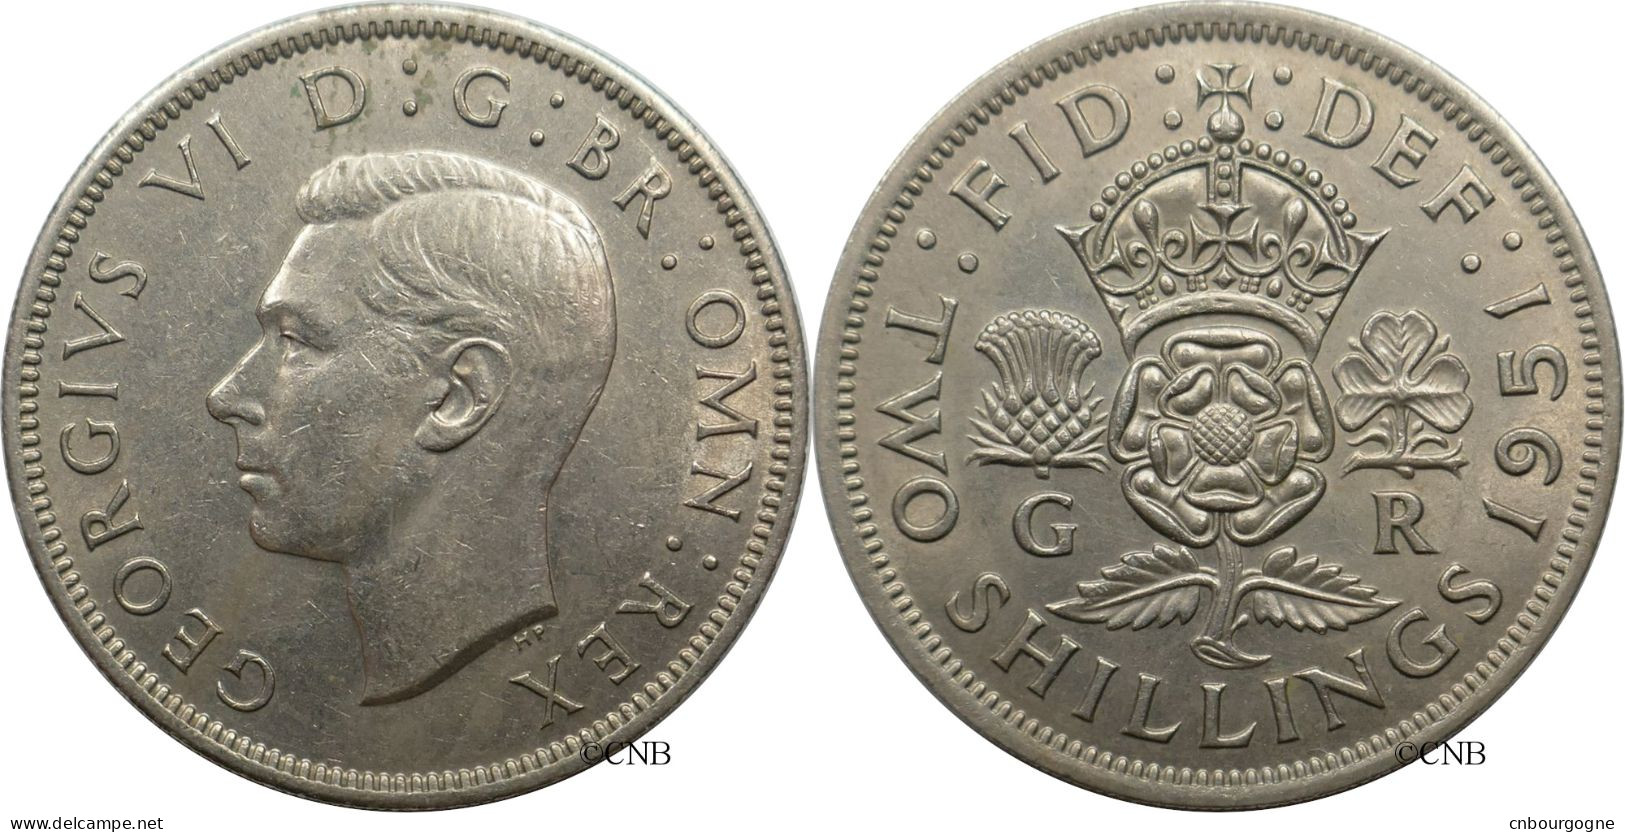 Royaume-Uni - George VI - Two Shillings 1951 - SUP/AU55 - Mon6203 - J. 1 Florin / 2 Schillings